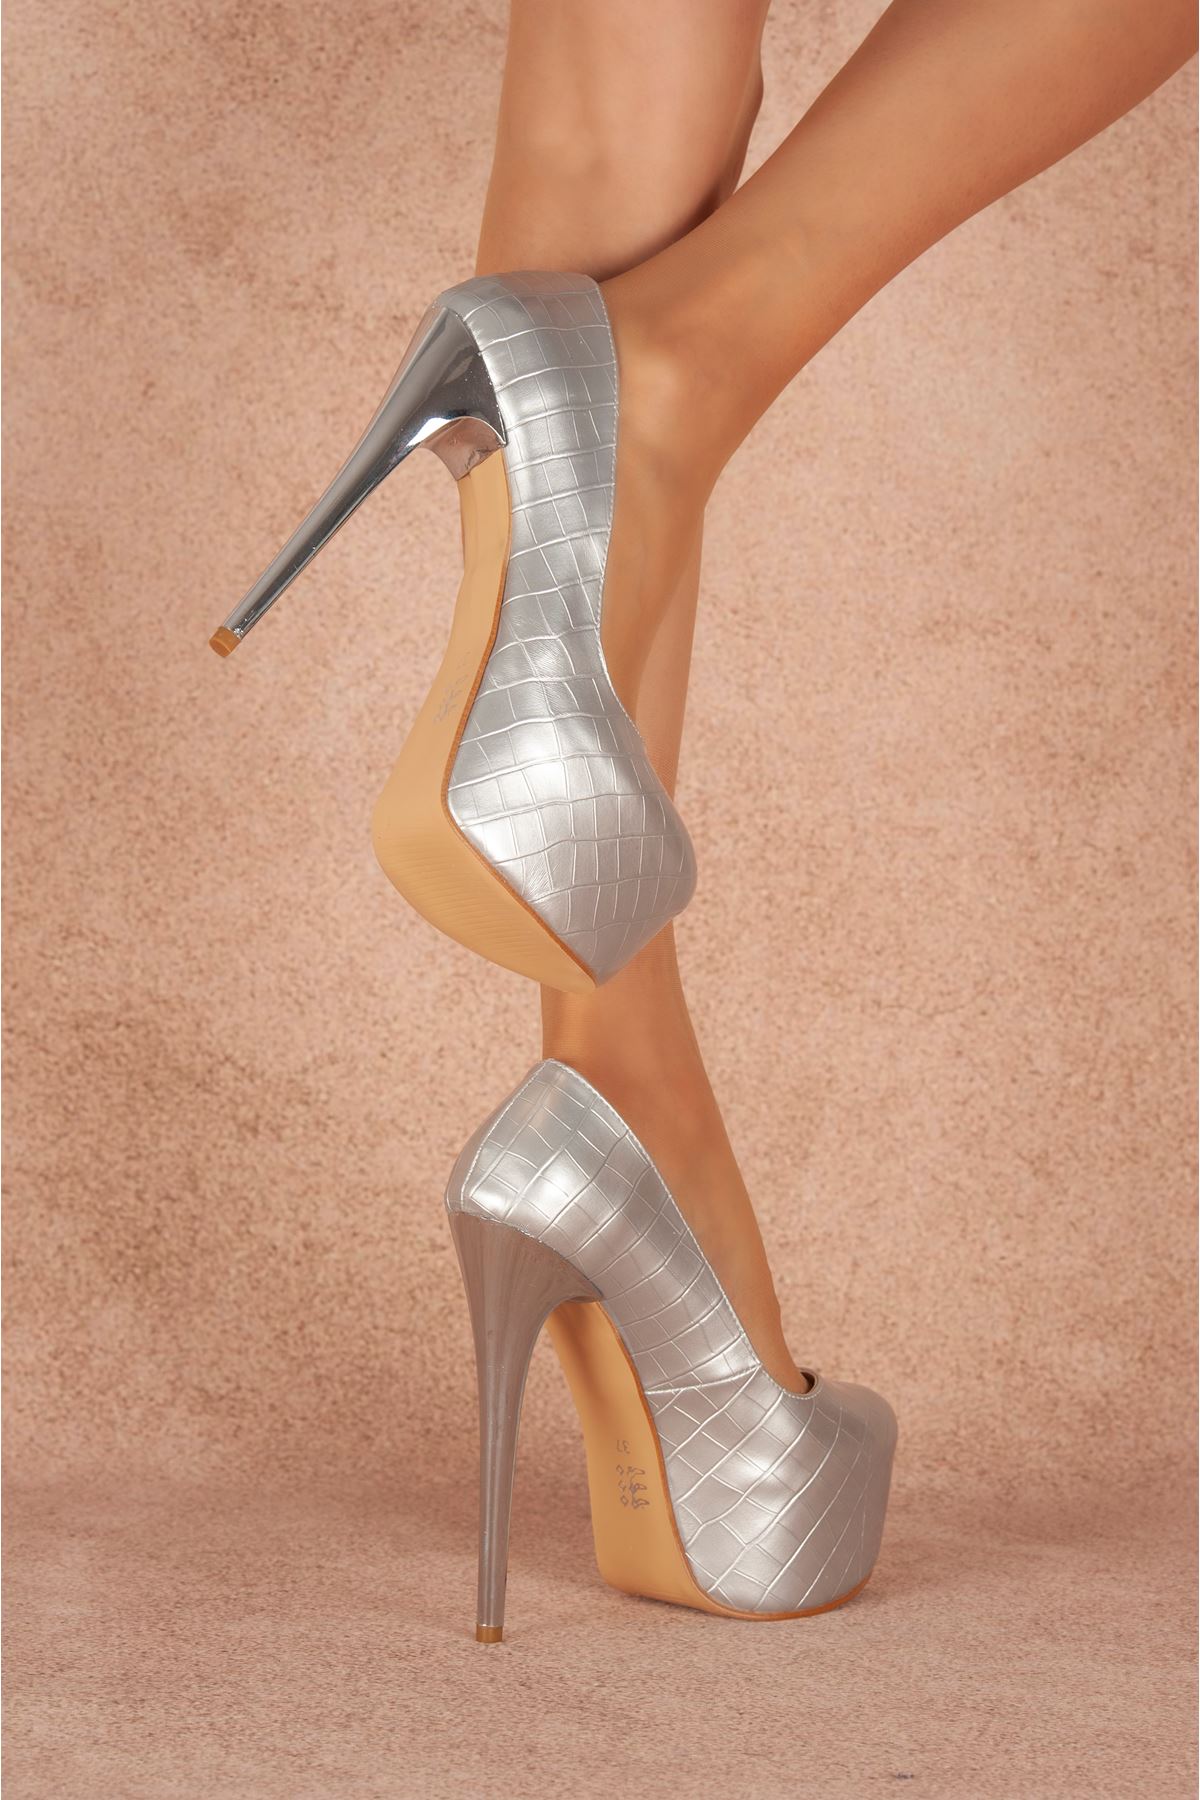 Josie Gümüş Krokanlı Yüksek Kadın Topuklu Ayakkabı 19 Cm